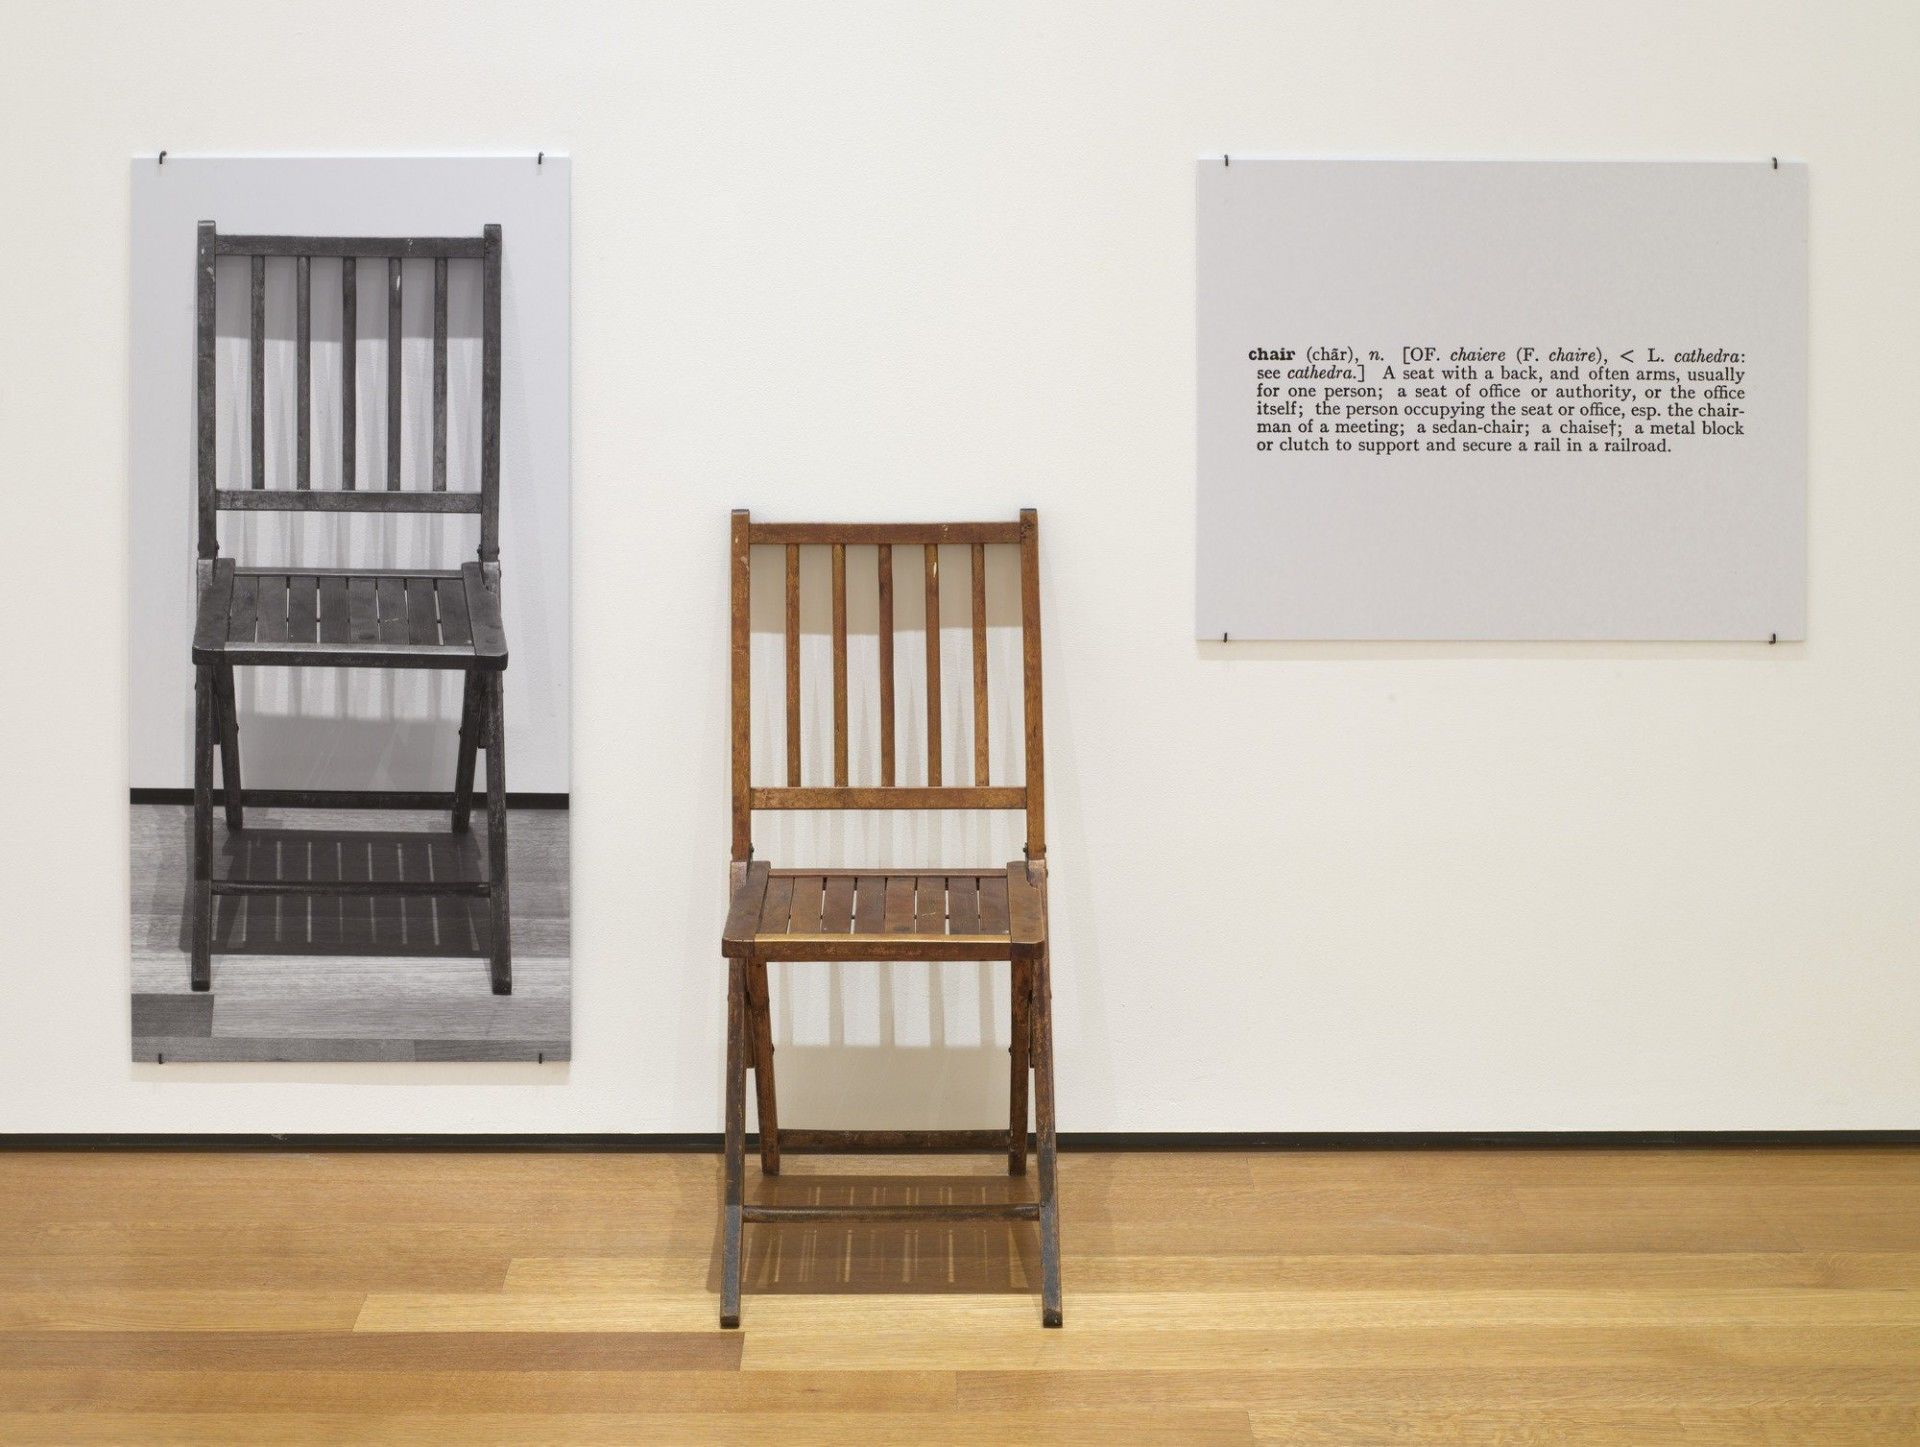 6. Contemporary Art Sample von Joseph Kosuth, One and Three Chairs, 1965. Klappstuhl aus Holz, montierte Fotografie eines Stuhls und montierte fotografische Vergrößerung der Definition von „Stuhl“, Museum of Modern Art, New York.